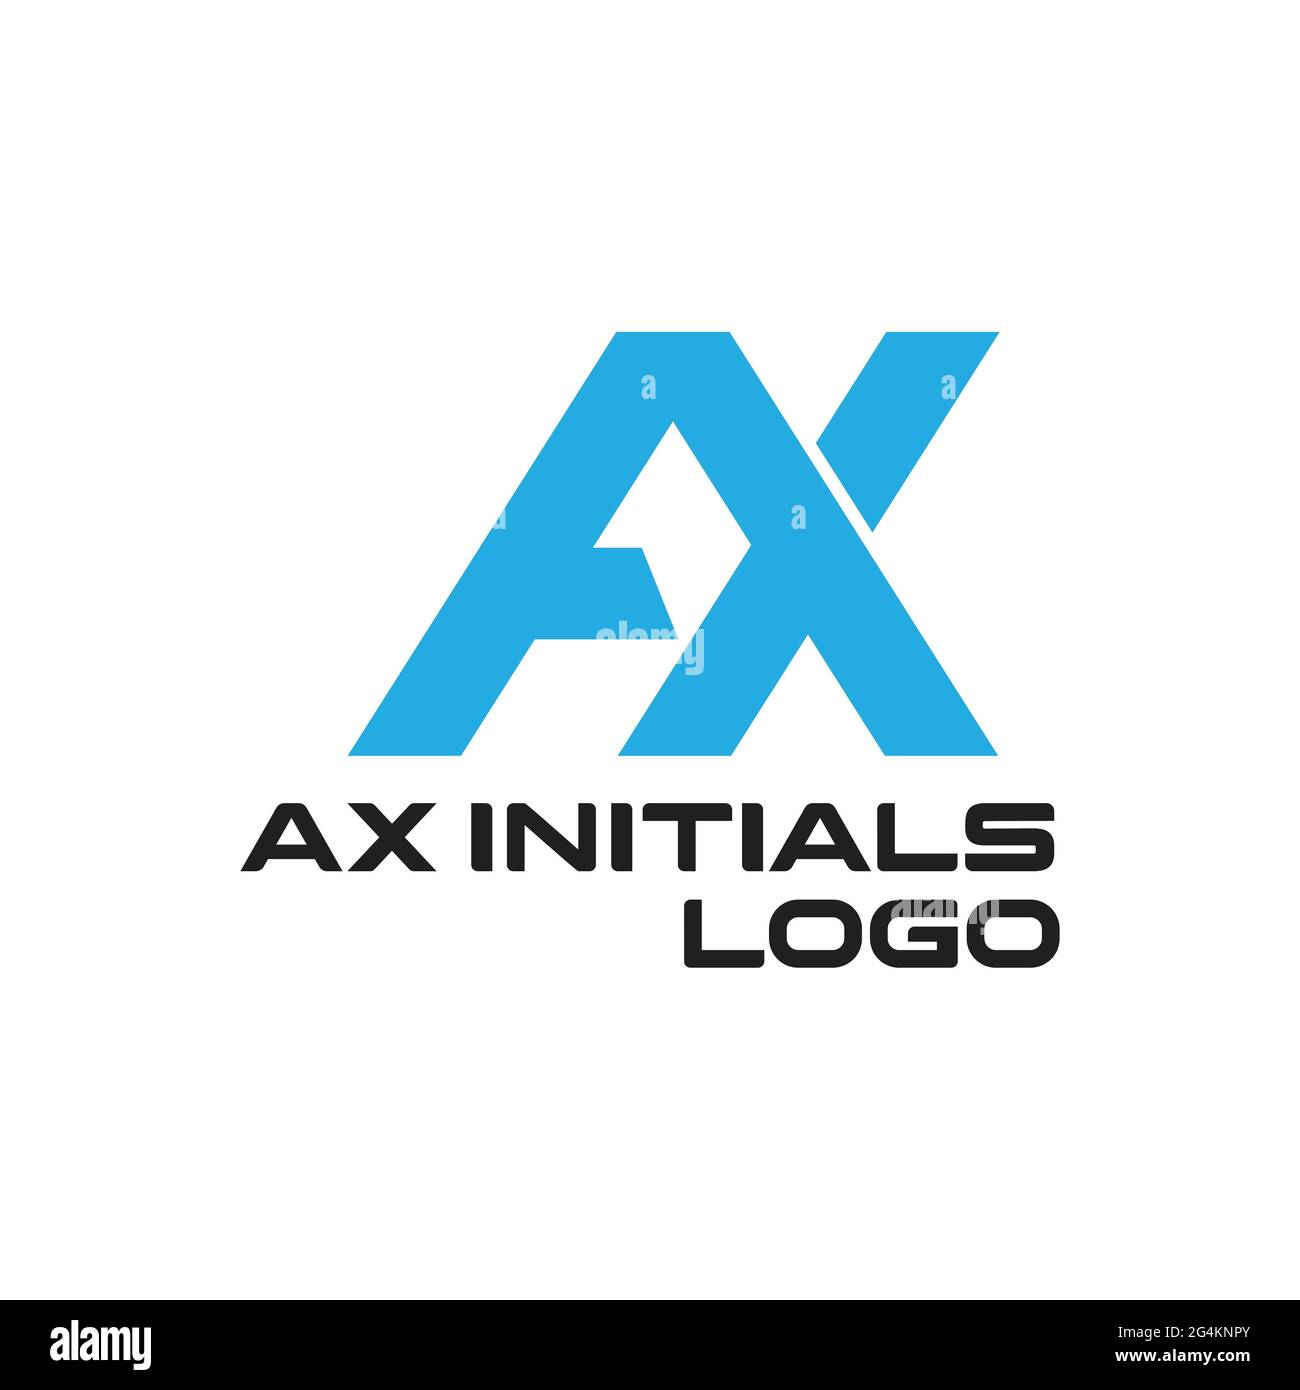 Ax logo exclusive design inspiration Stock Vector